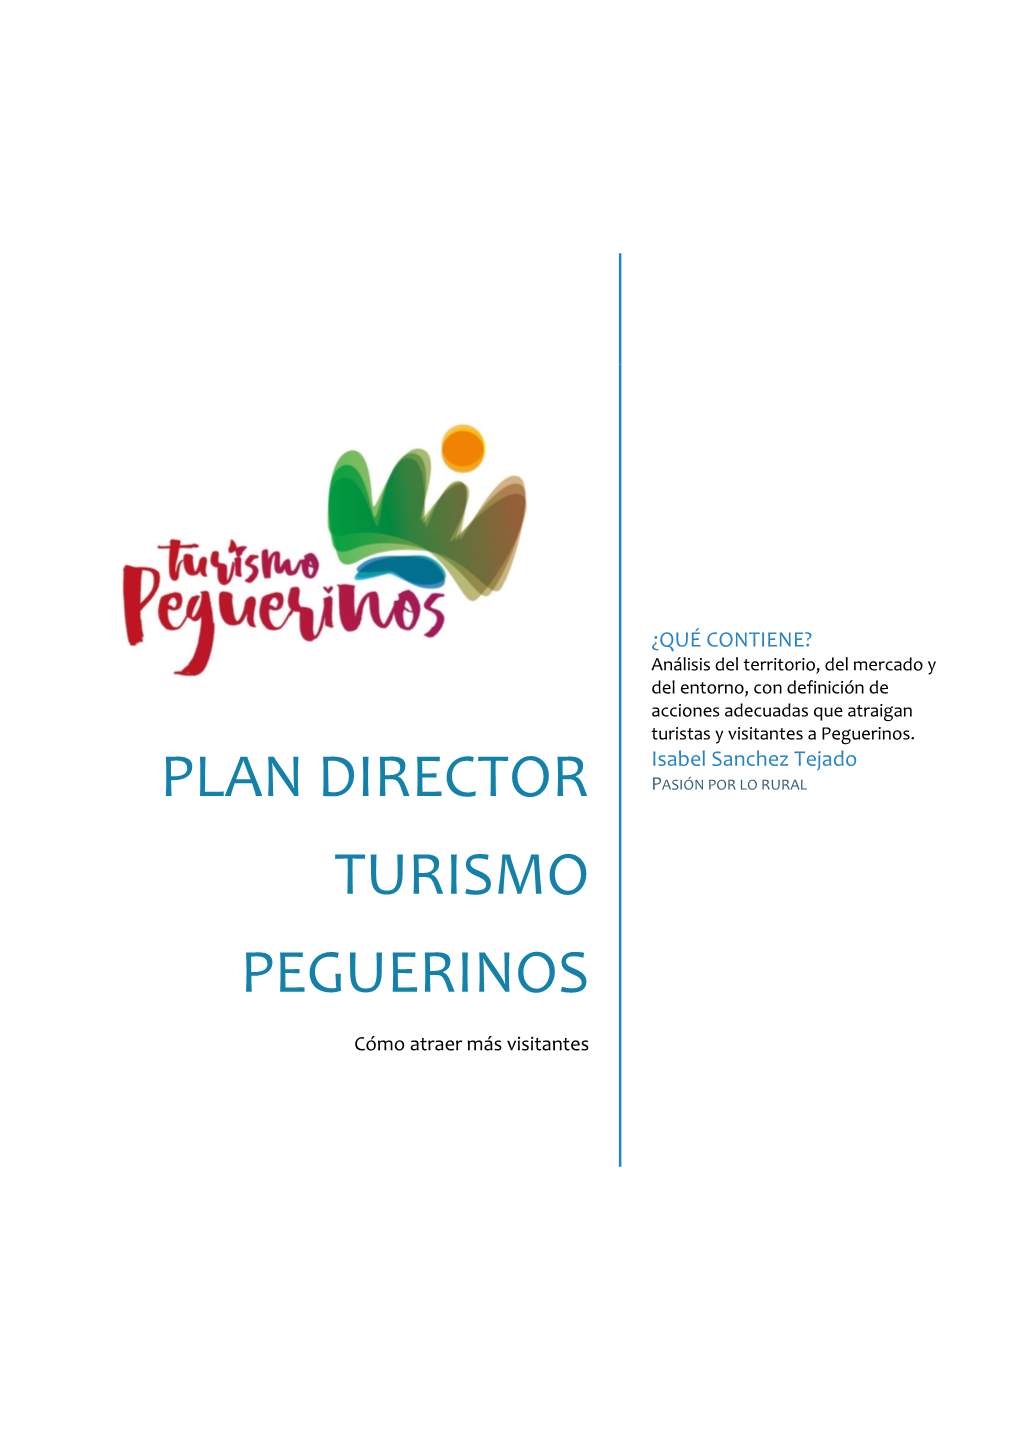 Plan Director Turismo Peguerinos